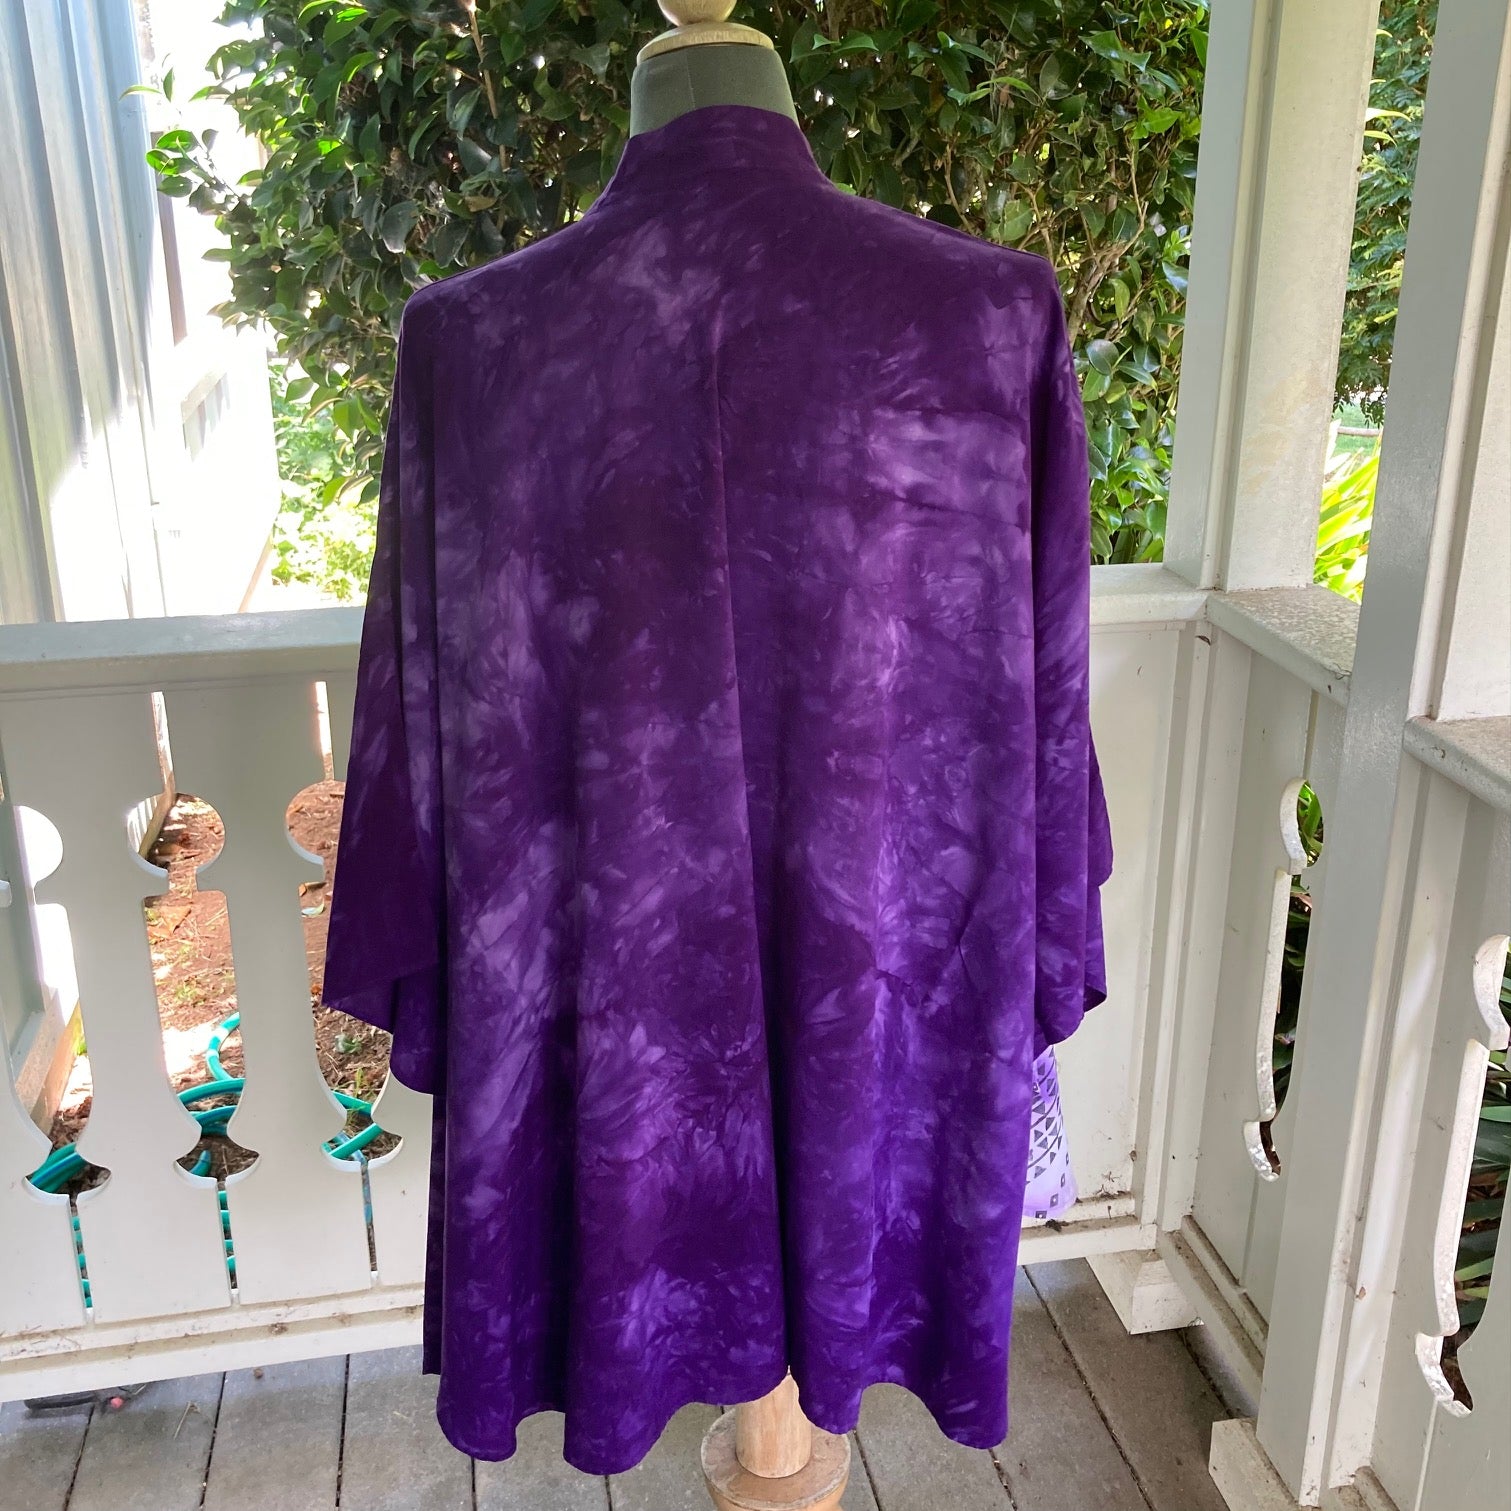 Ohe Kapala Kimono Wrap (KiWrap) In Mottled Purple with the Mauna and Lehua